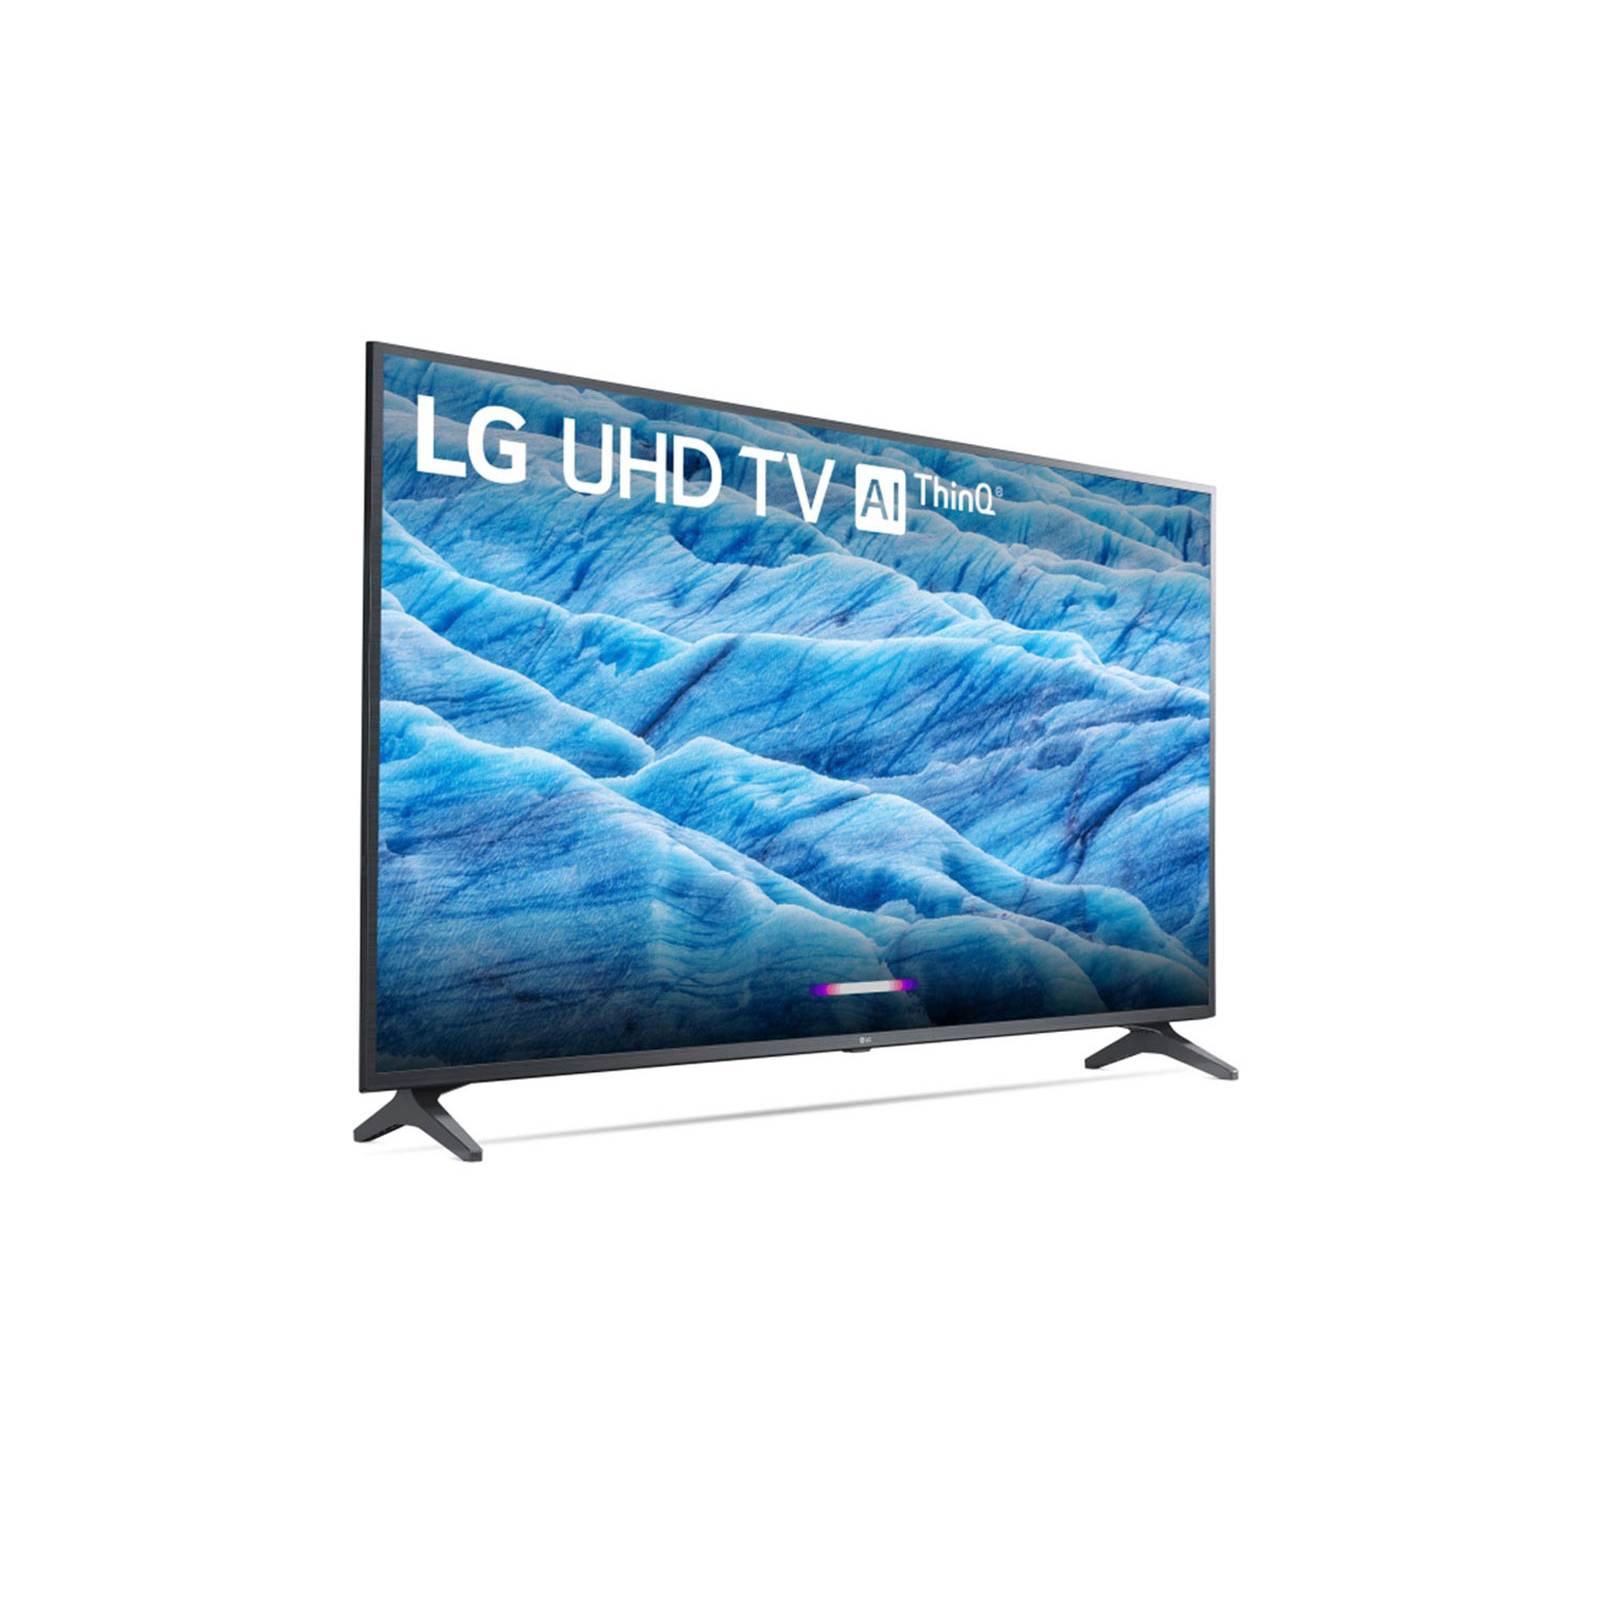 Smart TV LG 55 4K UHD HDR IPS LG ThinQ Al 55UM7300AUE - Reacondicionado